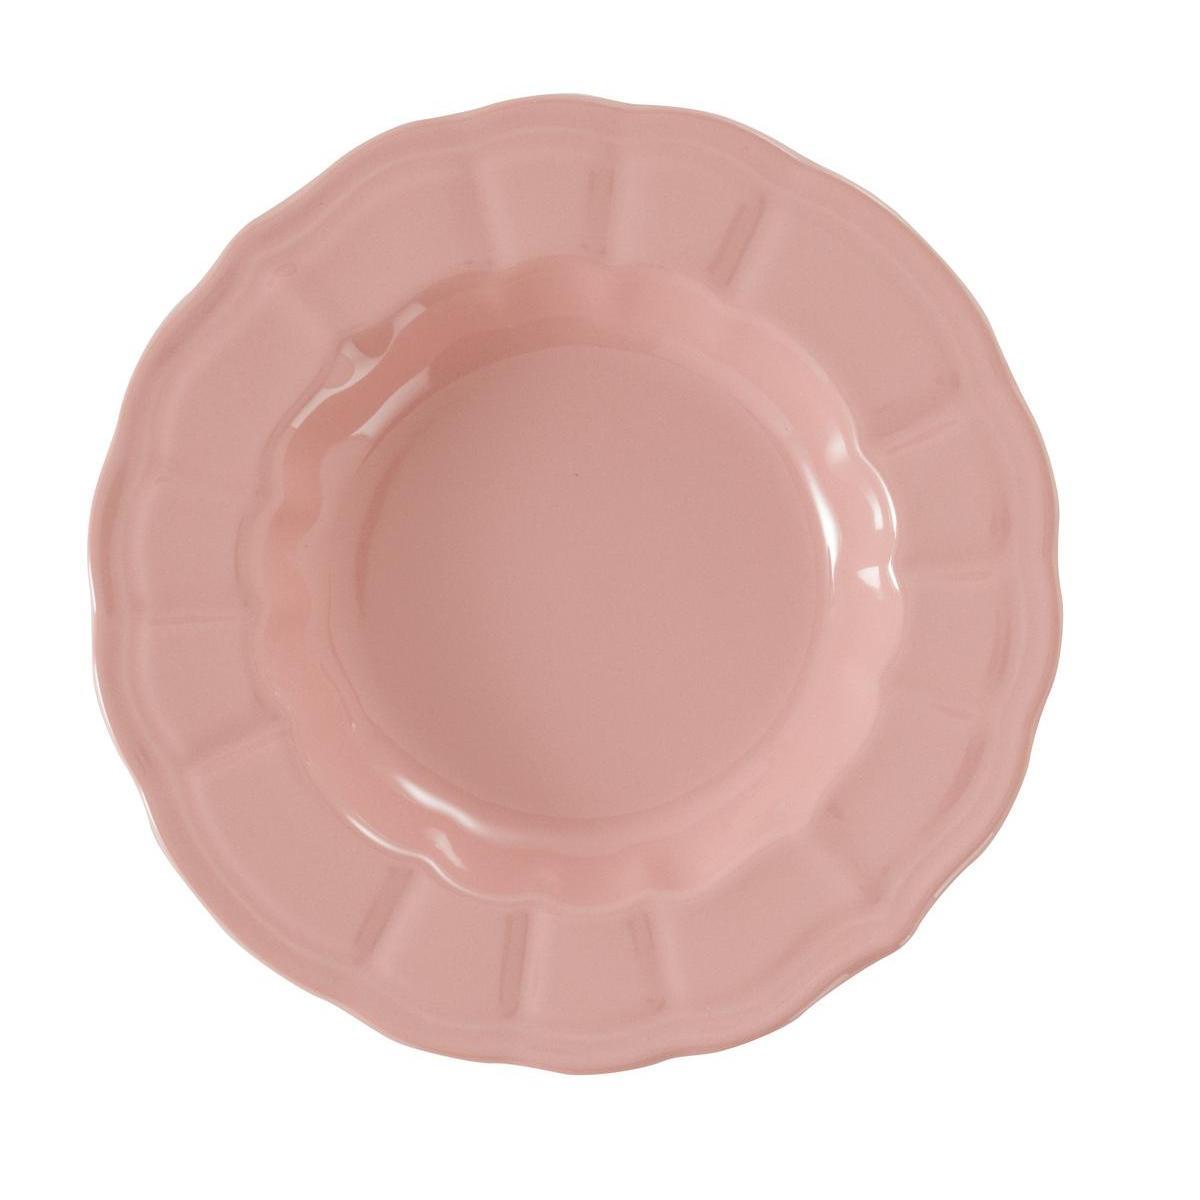 Assiette creuse - Grès - Ø 22 cm - Rose pâle